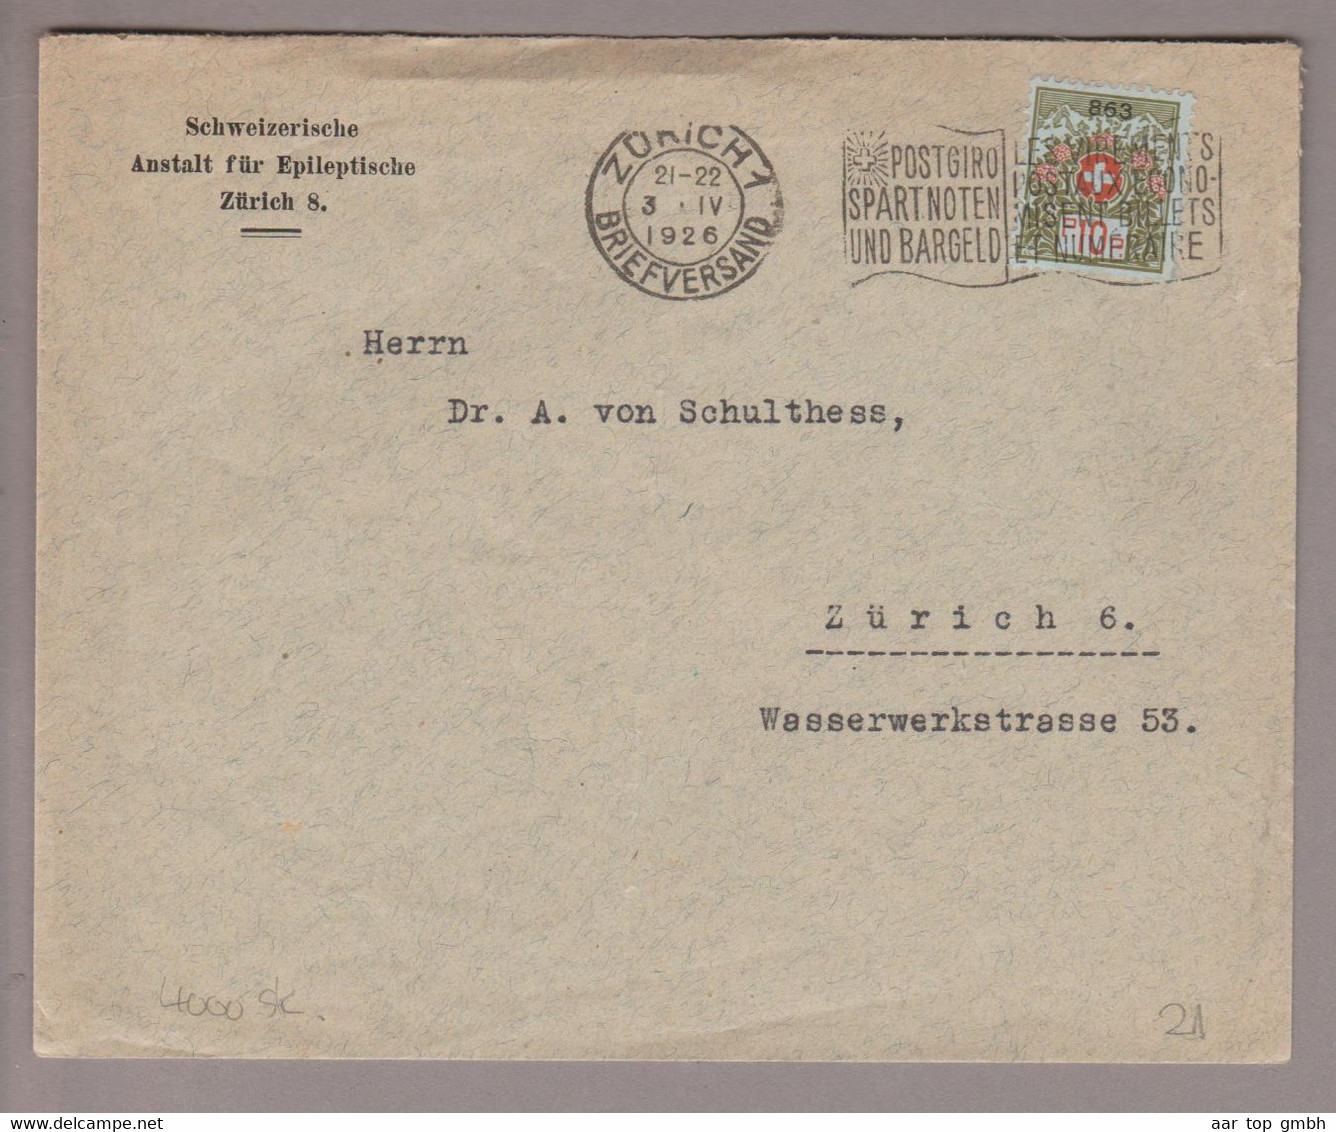 CH Portofreiheit Zu#9 10Rp. GR#863 Brief 1926-04-03 Zürich Schweiz. Anstalt F.Epileptische Zürich8 - Franquicia